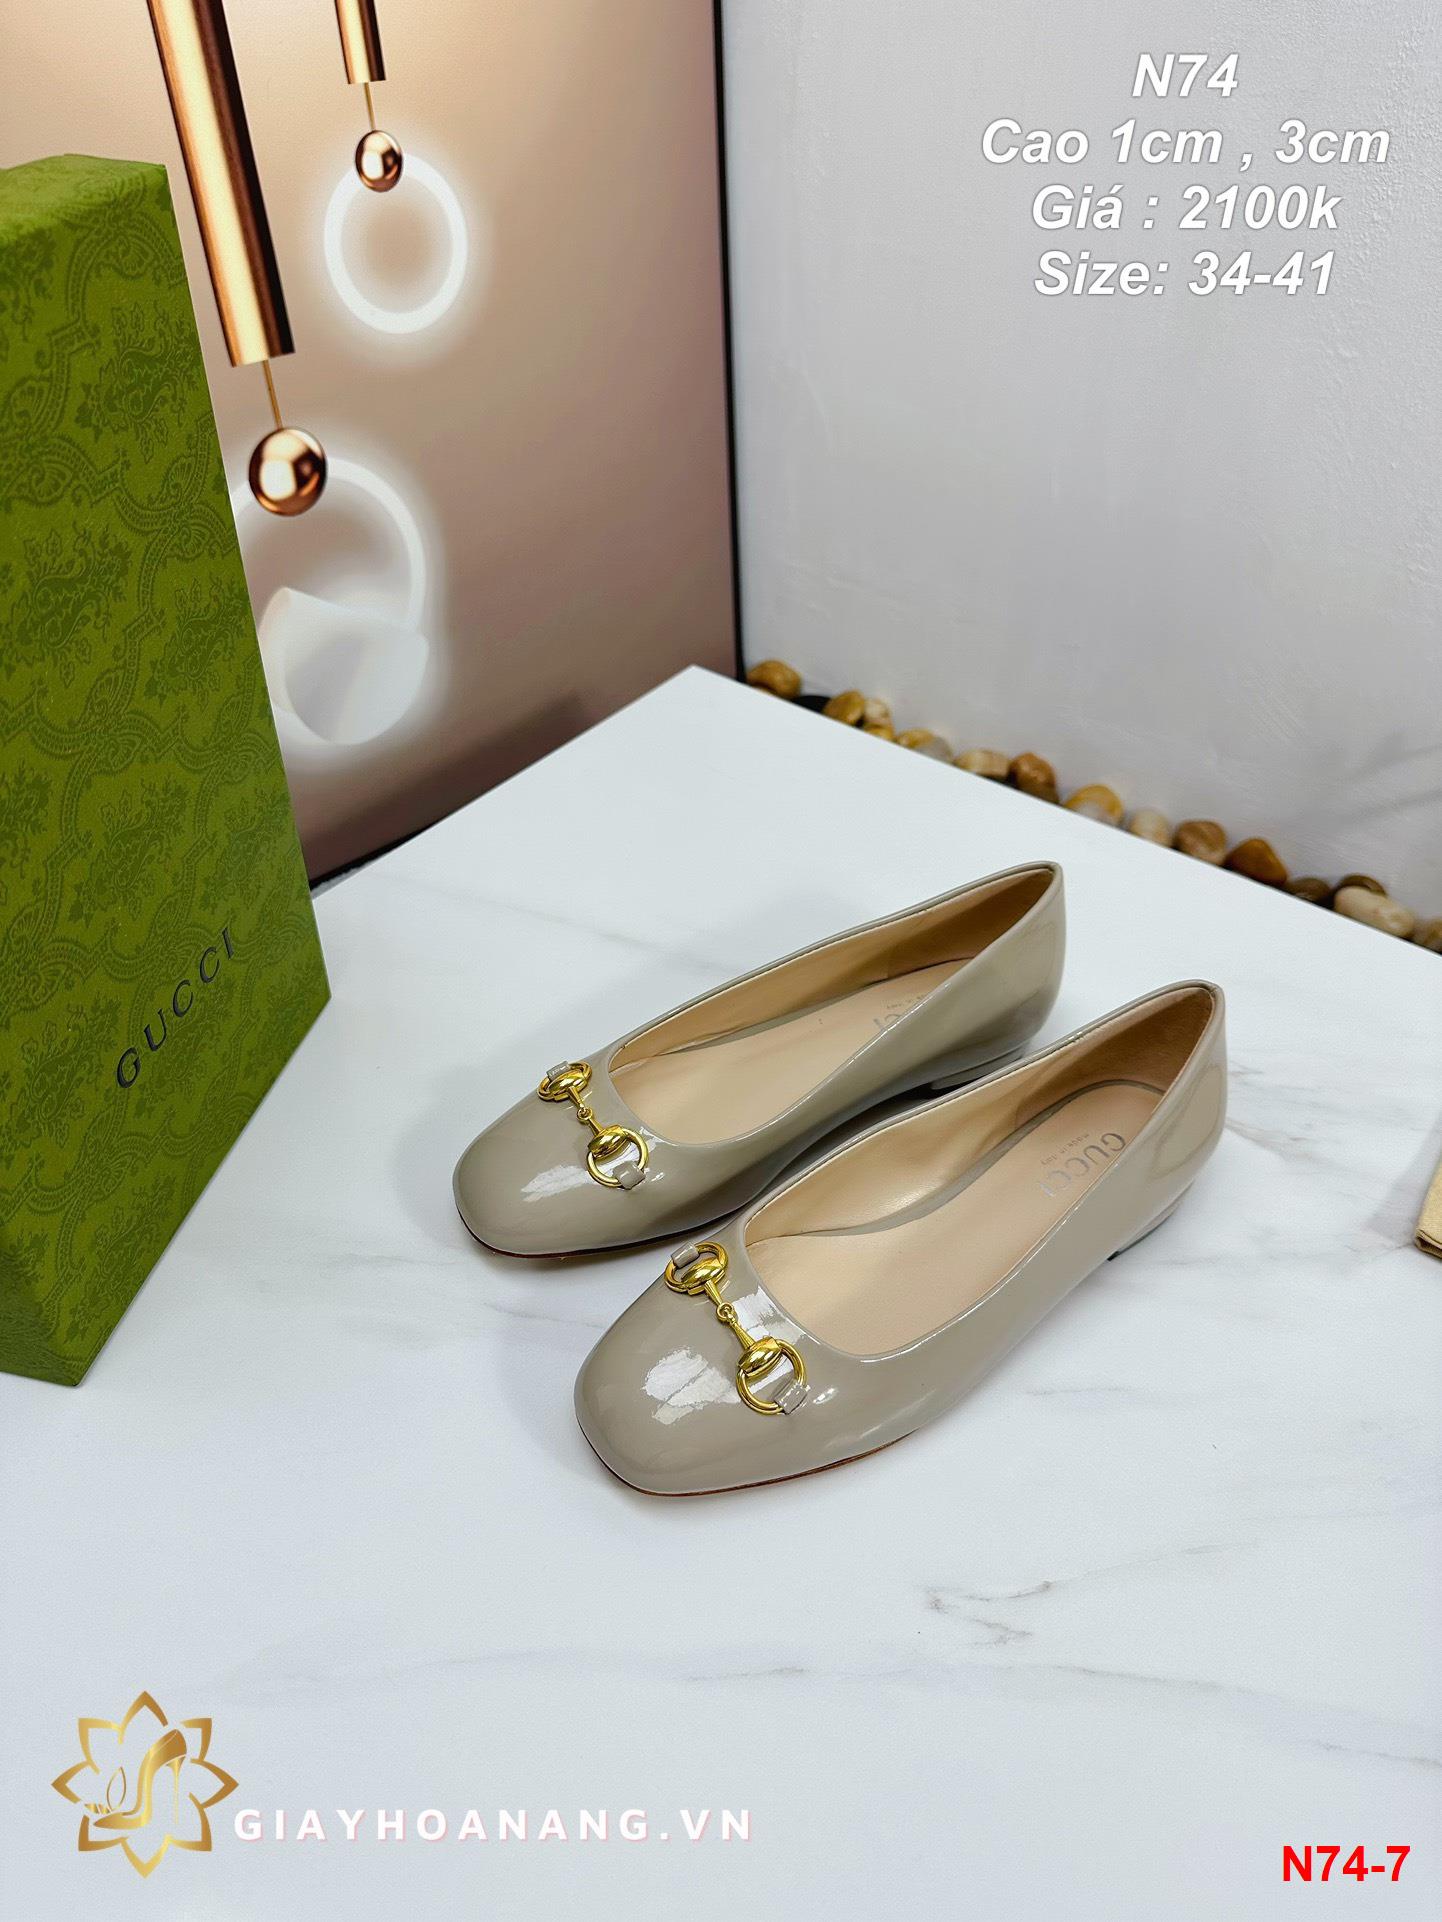 N74-7 Gucci giày cao 1cm , 3cm siêu cấp